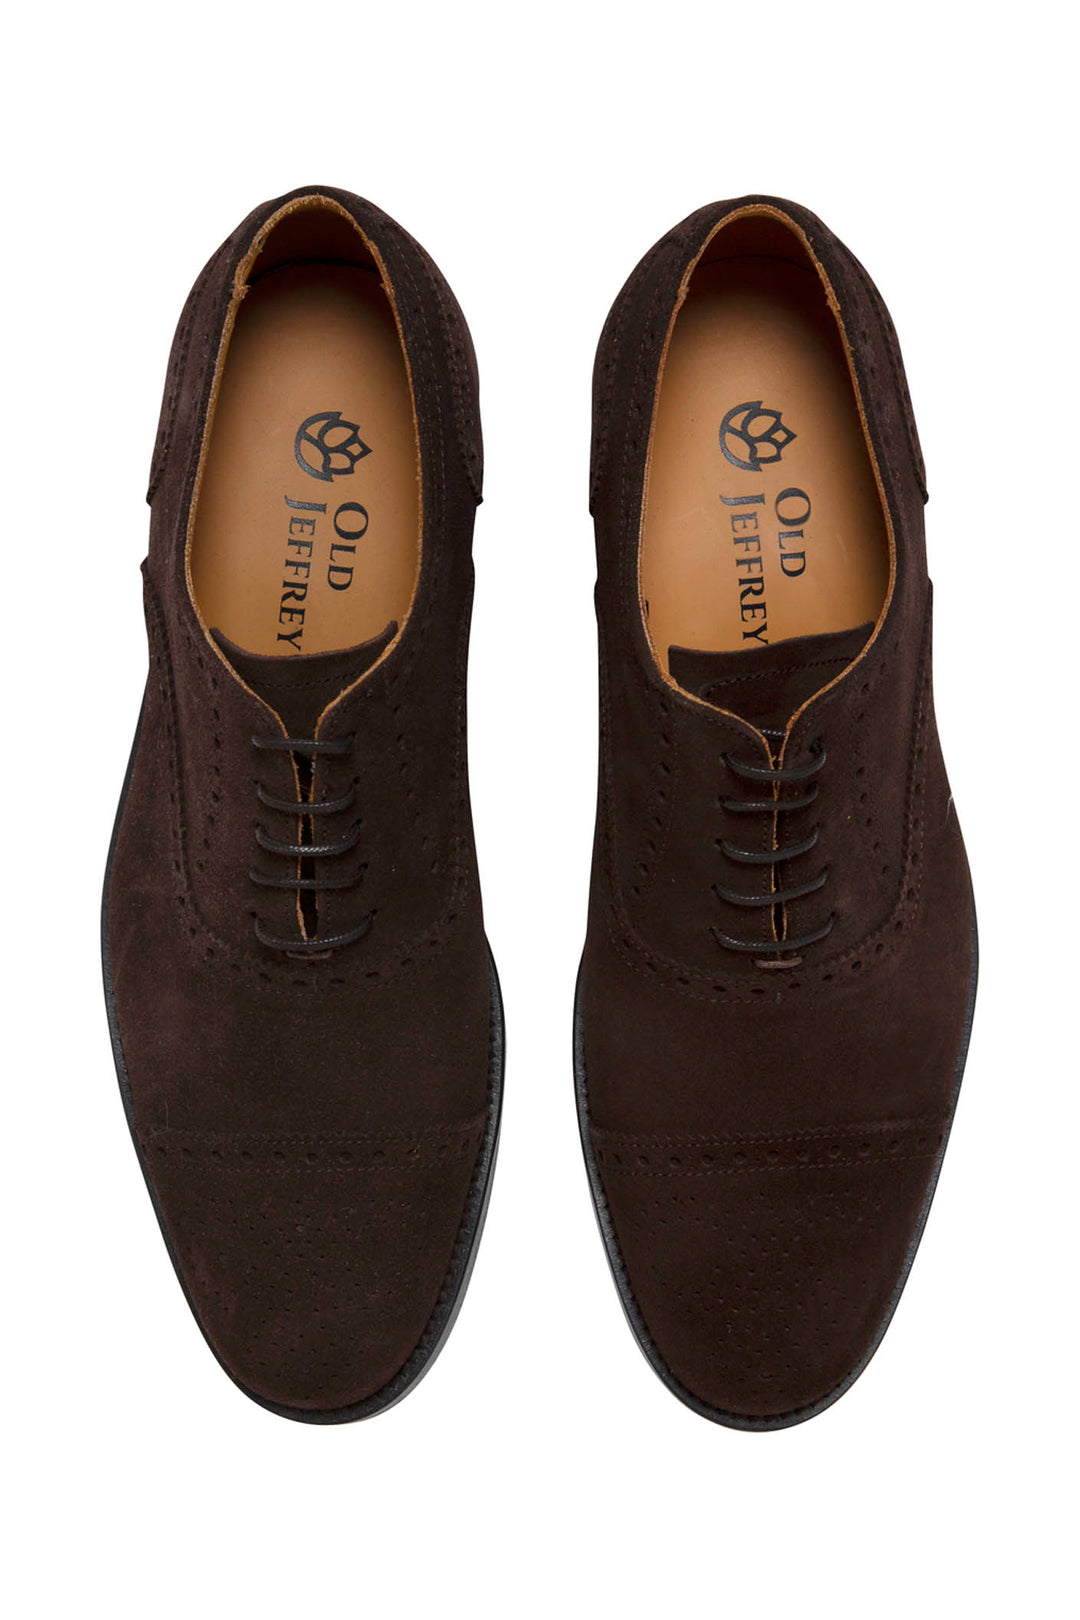 Brocade Brown Suede Oxford Shoe